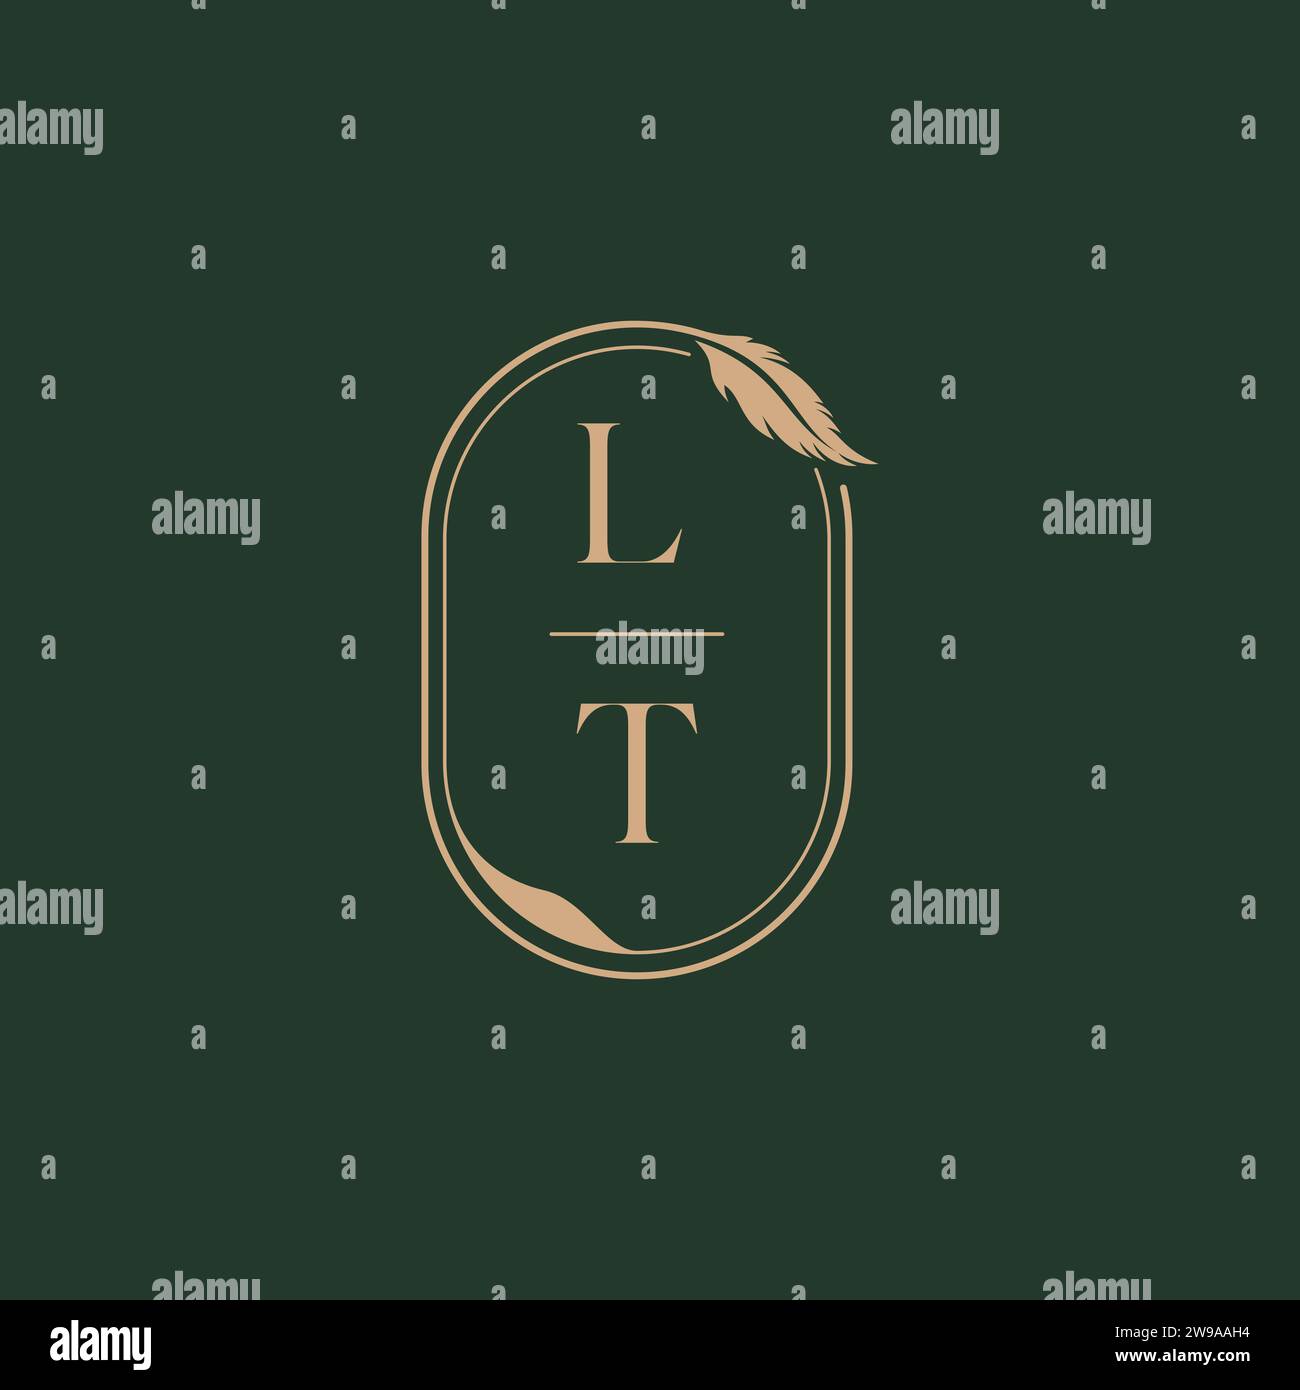 LT feather concept wedding monogram logo design ideas as inspiration Stock Vector